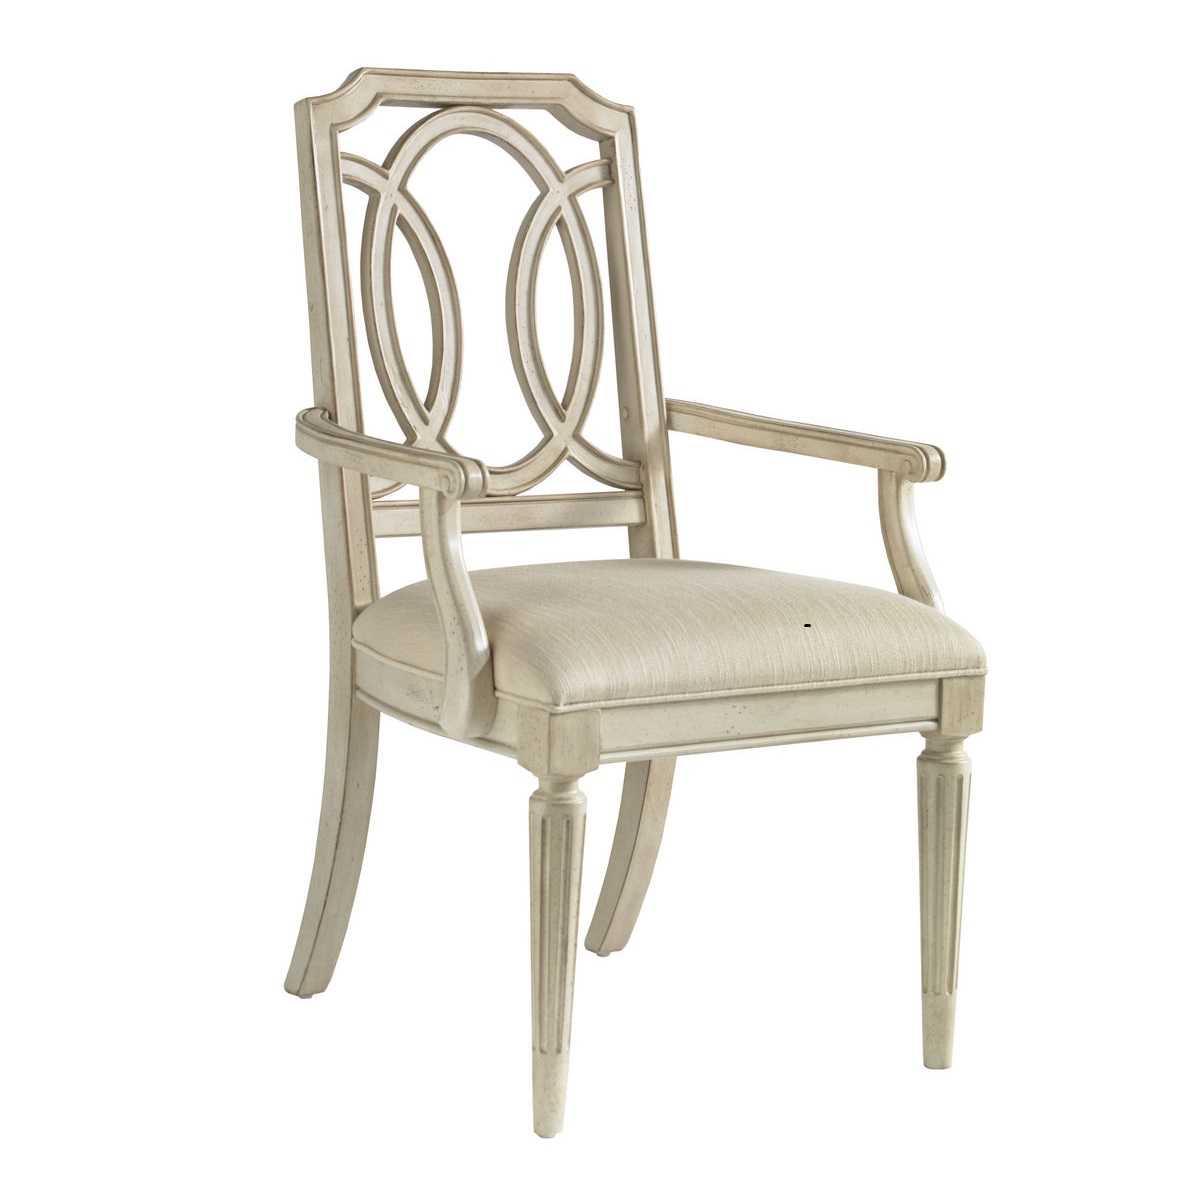 Стулья с подлокотниками: полукресла и кресла российского производства для спальни, большие стулья для просторной комнаты